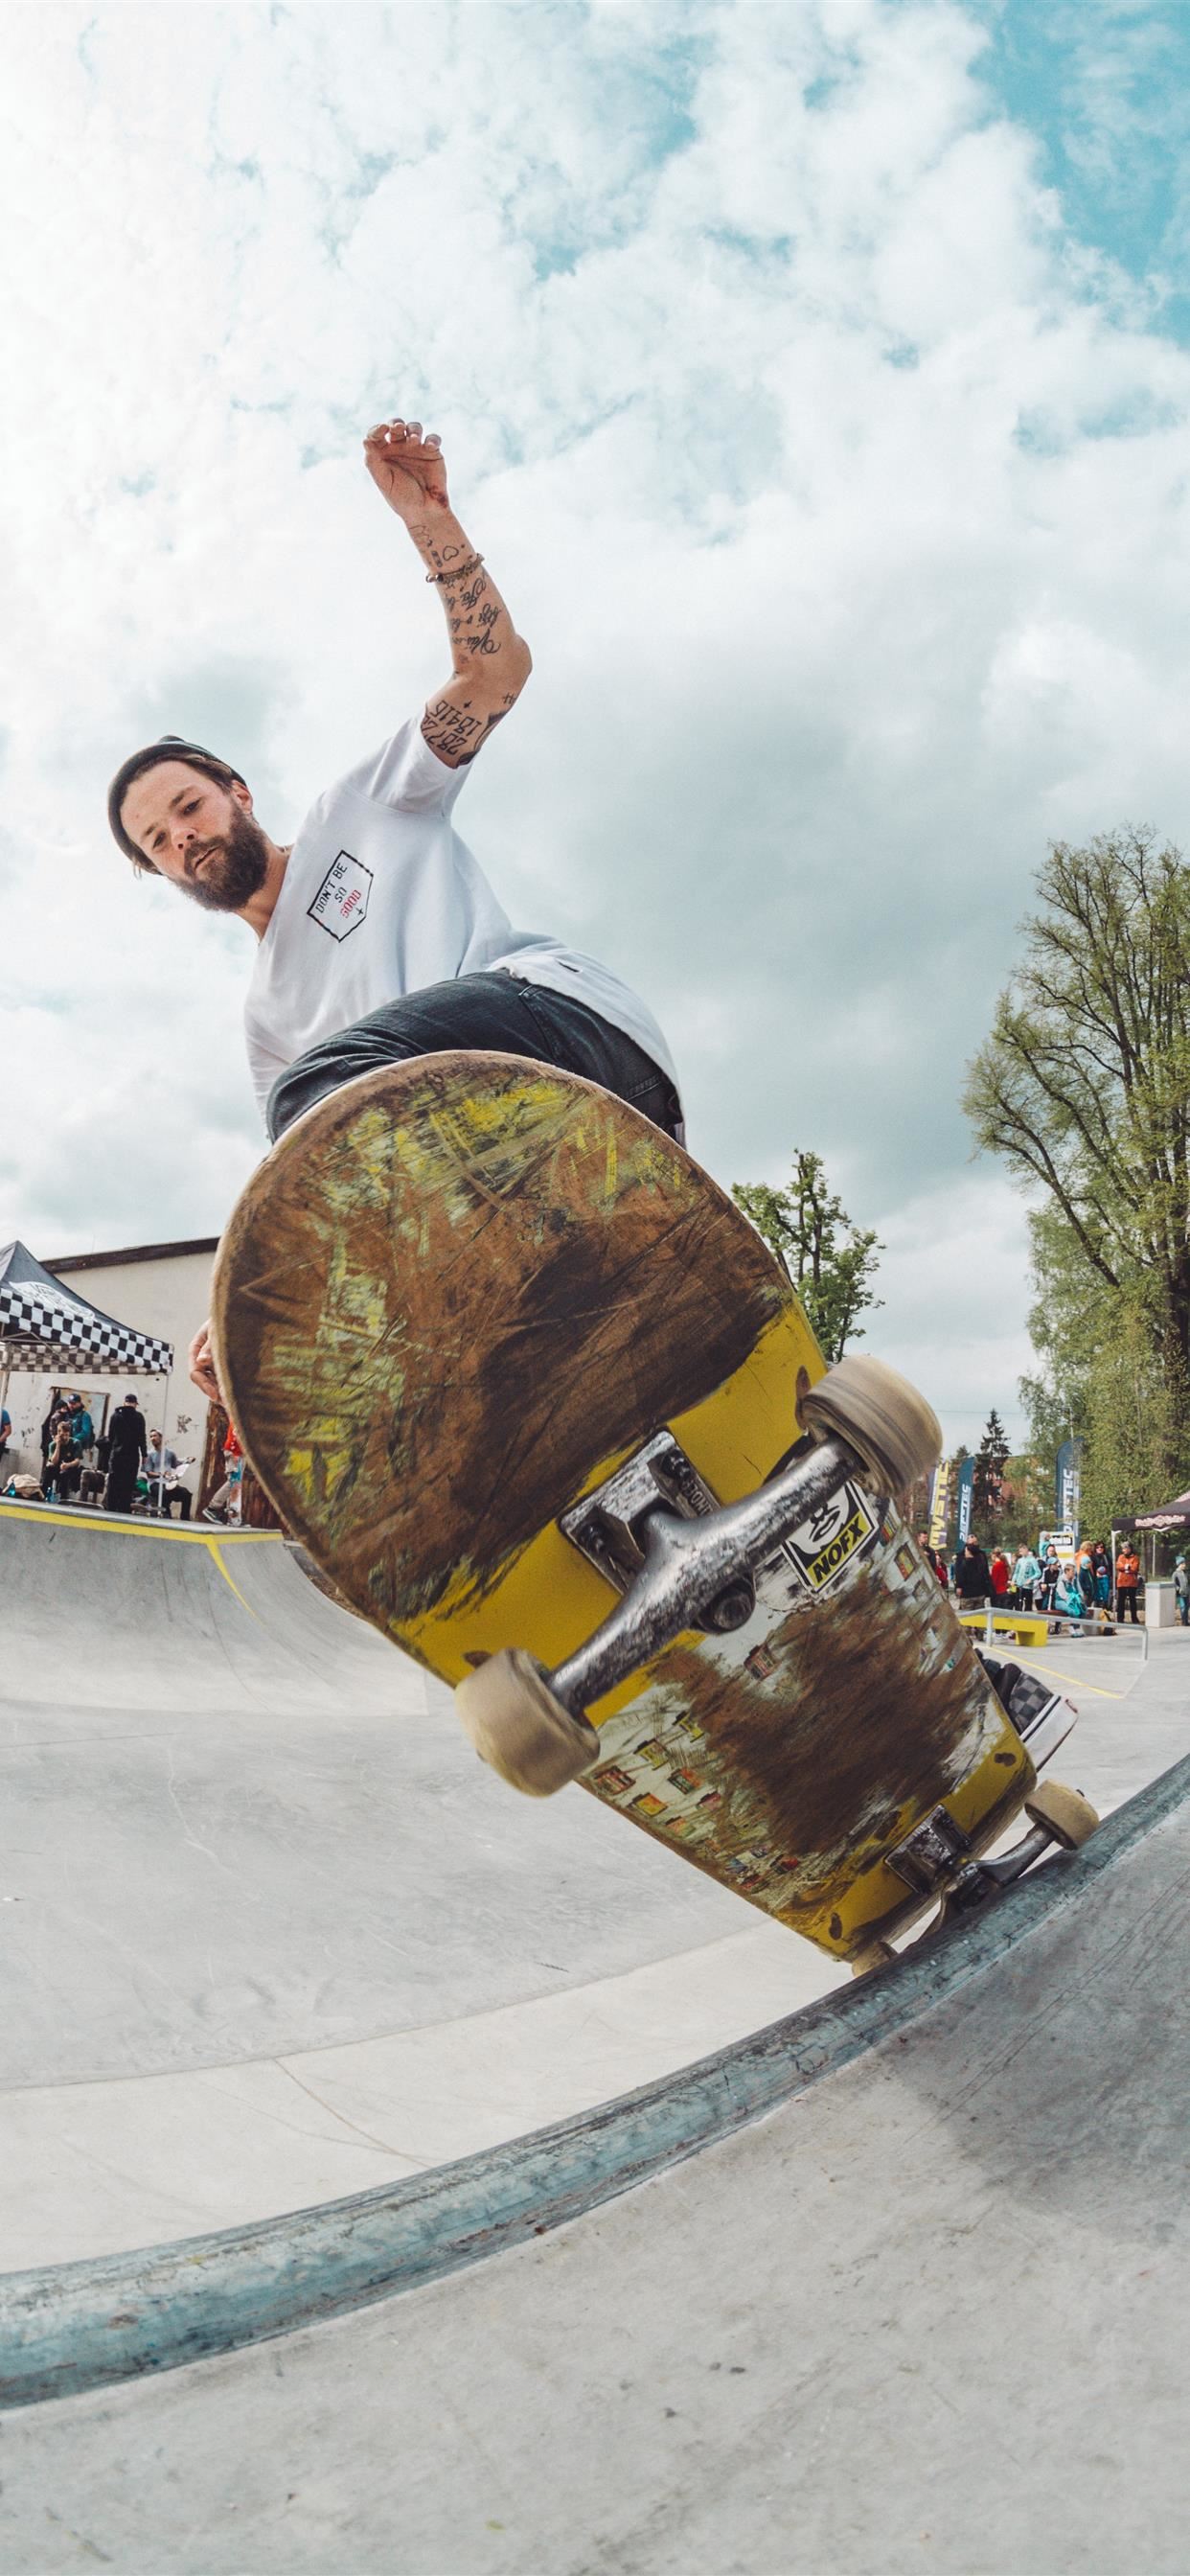 14 Best Skateboard Aesthetic Wallpaper ideas  skateboard aesthetic  skateboard aesthetic wallpaper skateboard